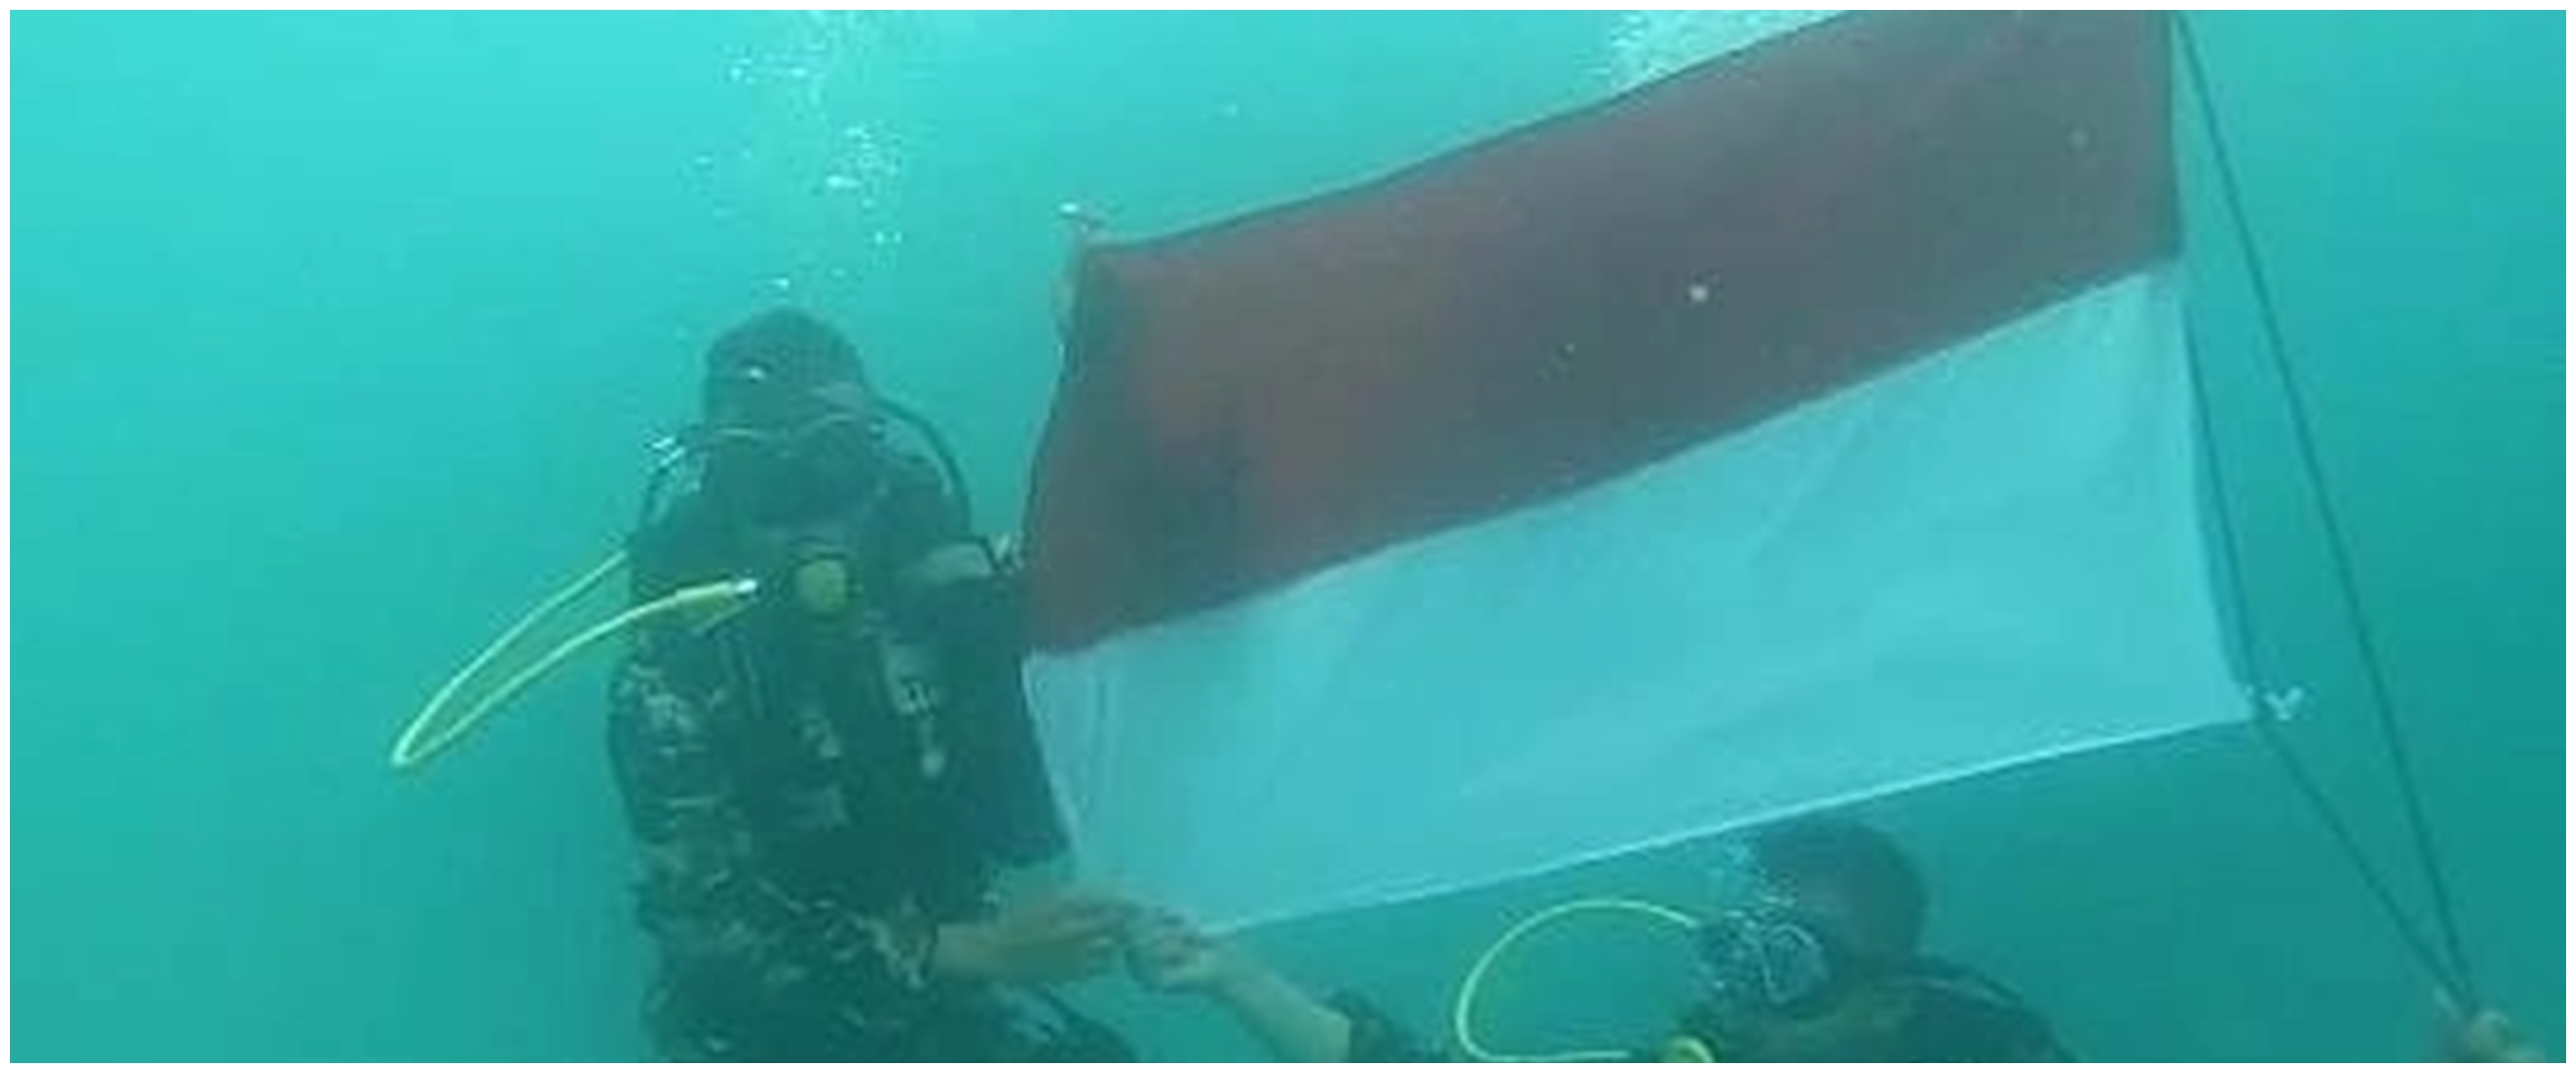 Momen prajurit TNI AL kibarkan bendera merah putih di bawah laut